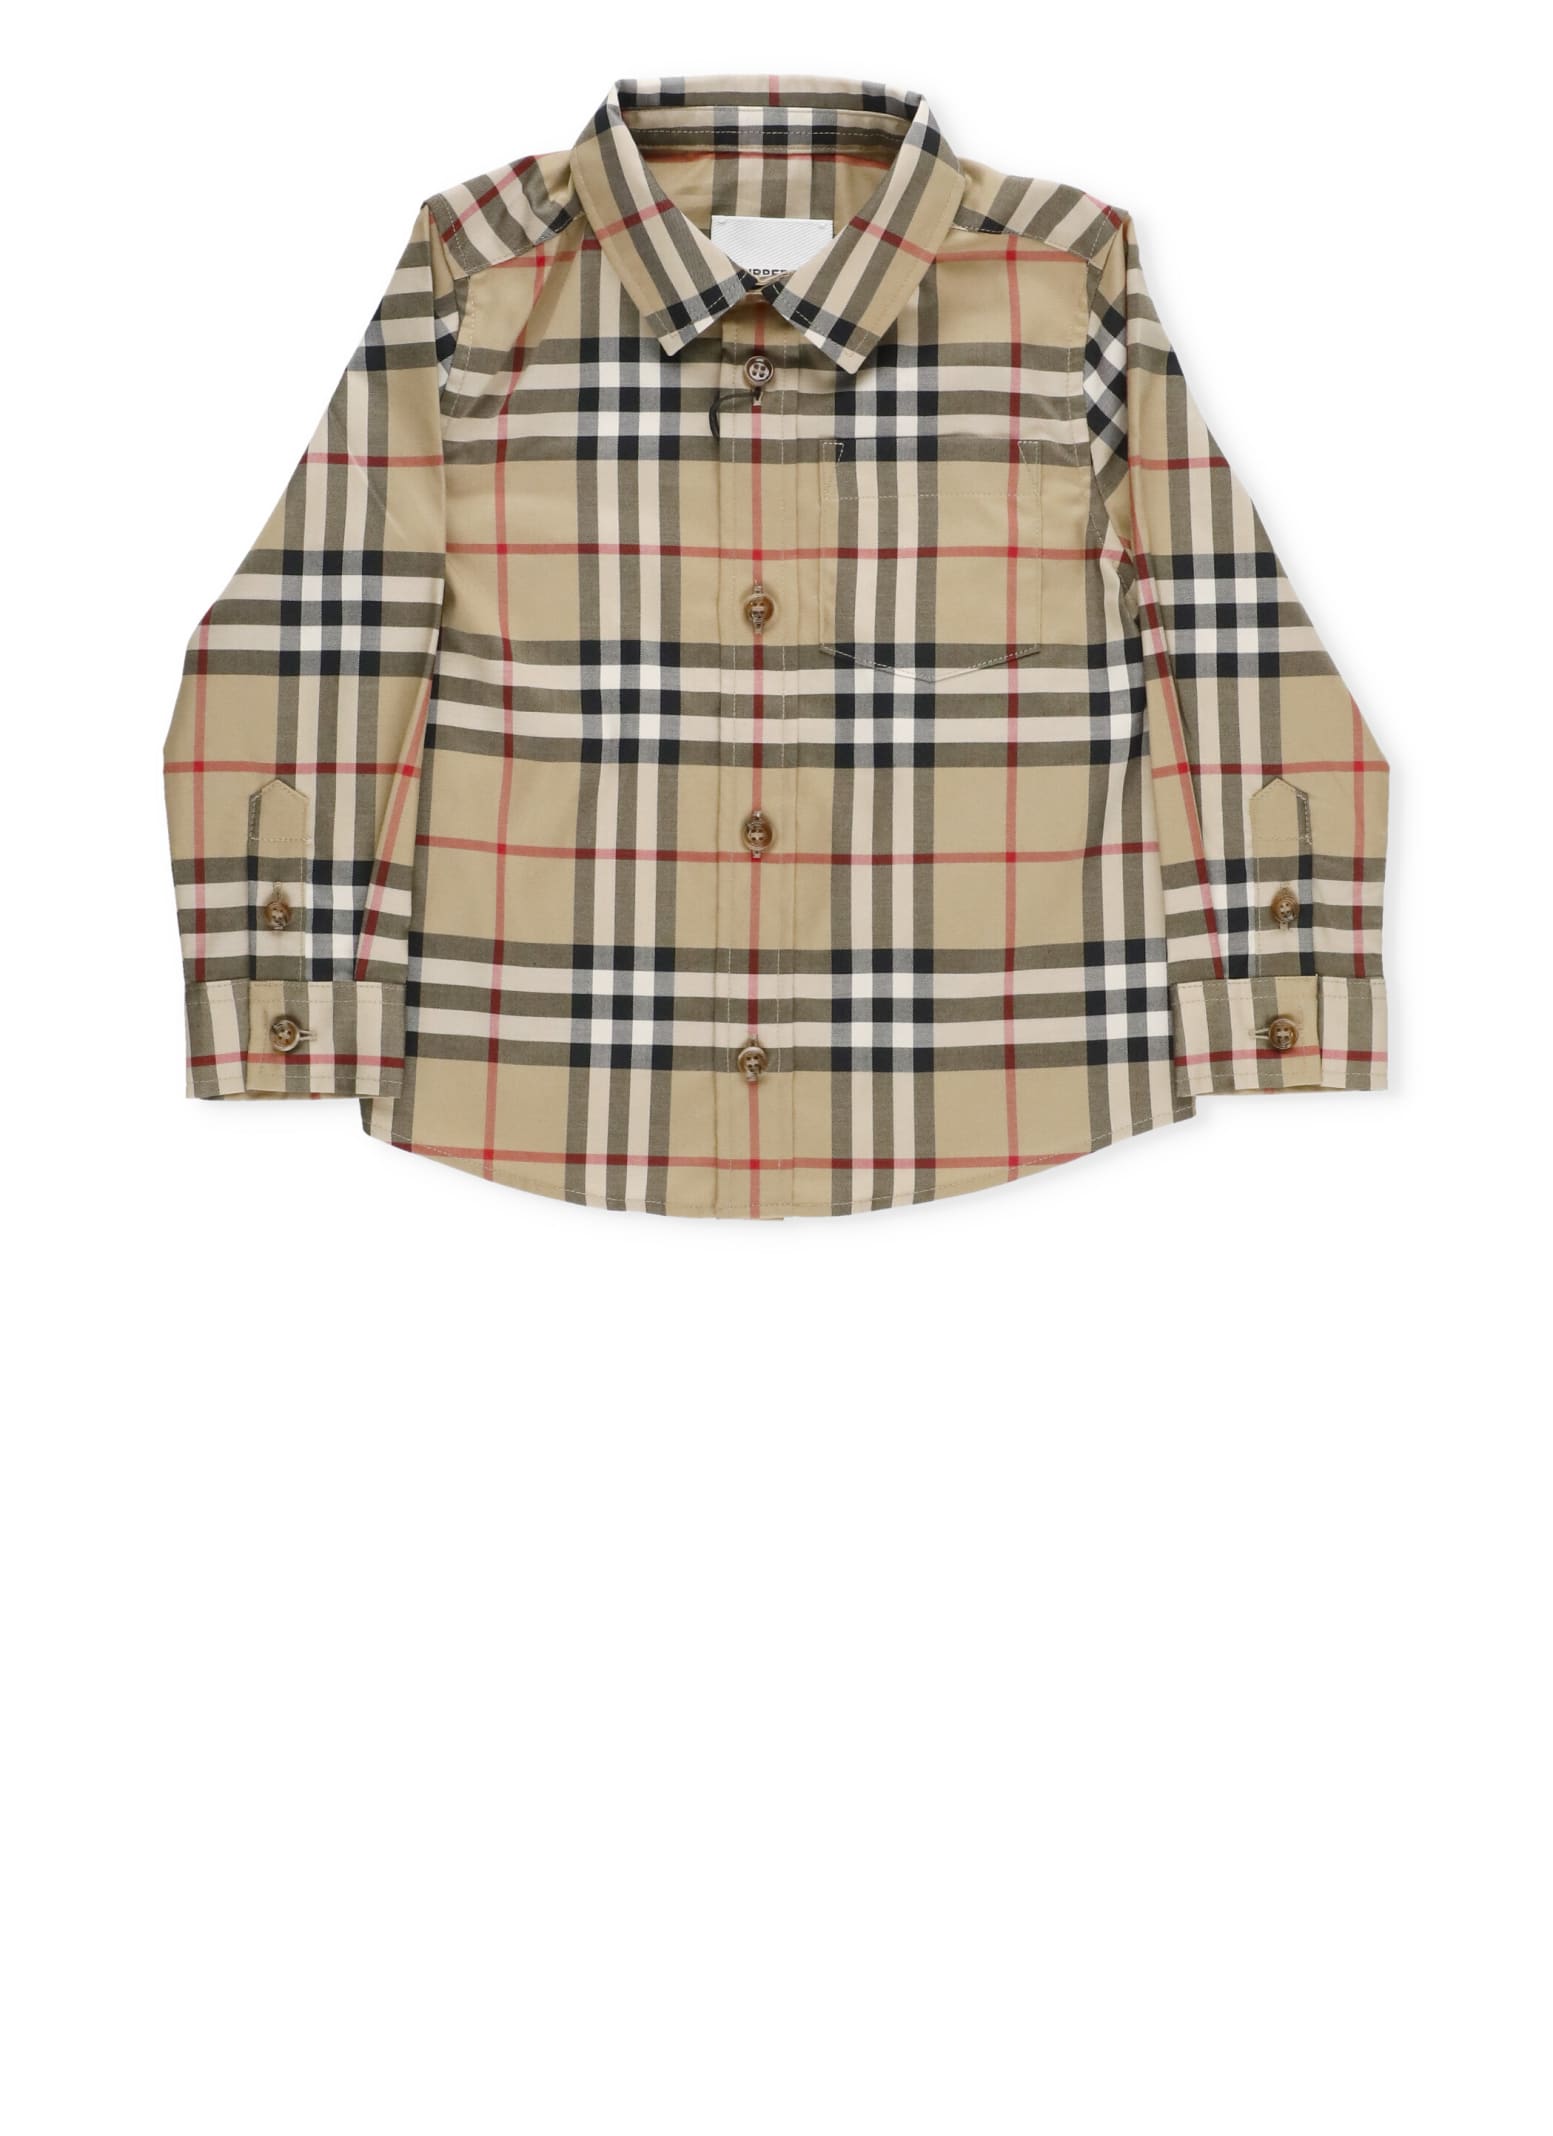 Burberry Owen Shirt